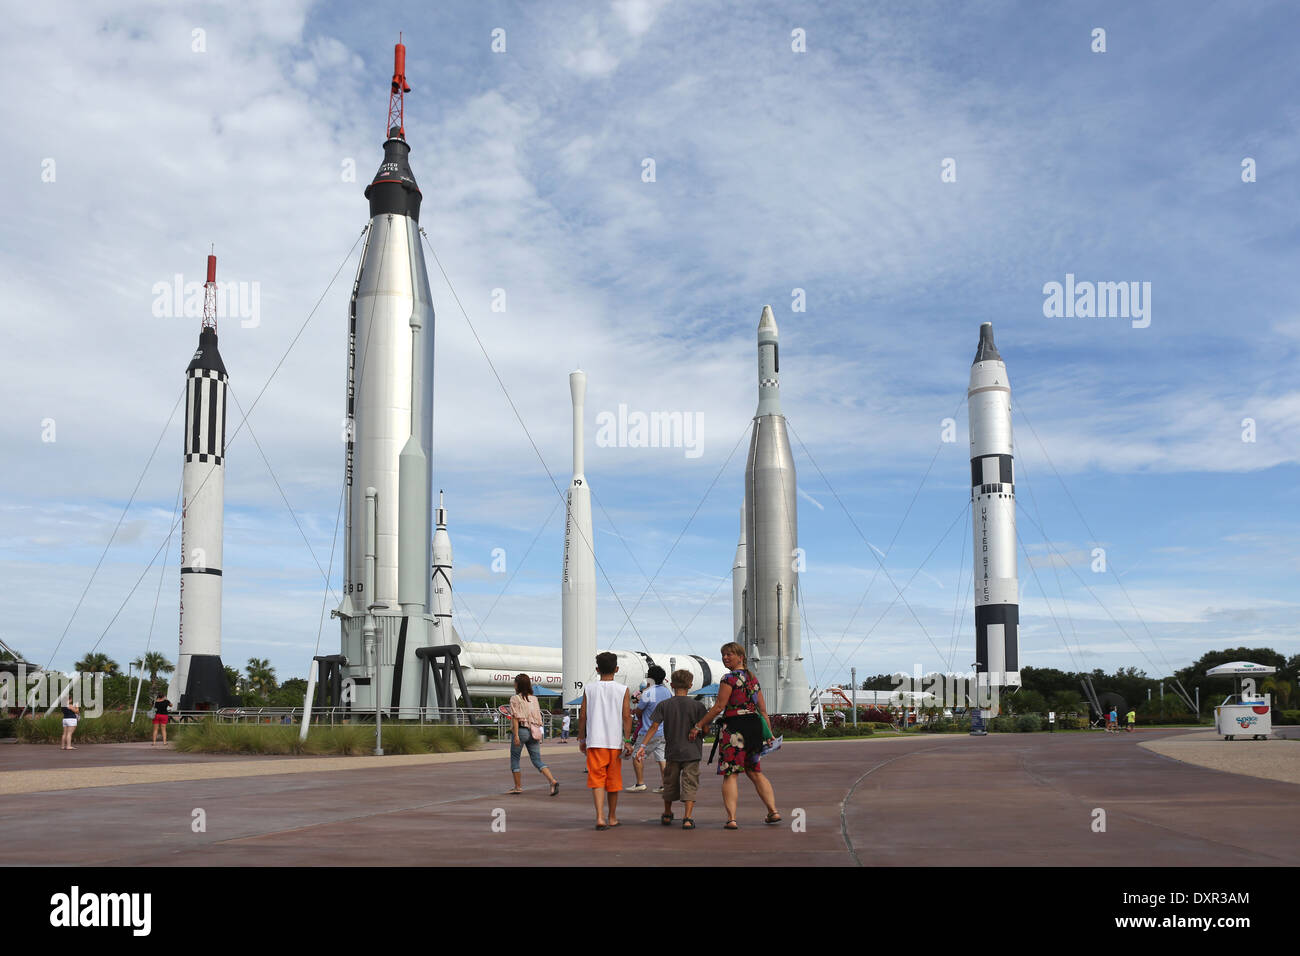 Merritt Islande, États-Unis d'Amérique, le Rocket Garden au Kennedy Space Center Visitor Complex Banque D'Images